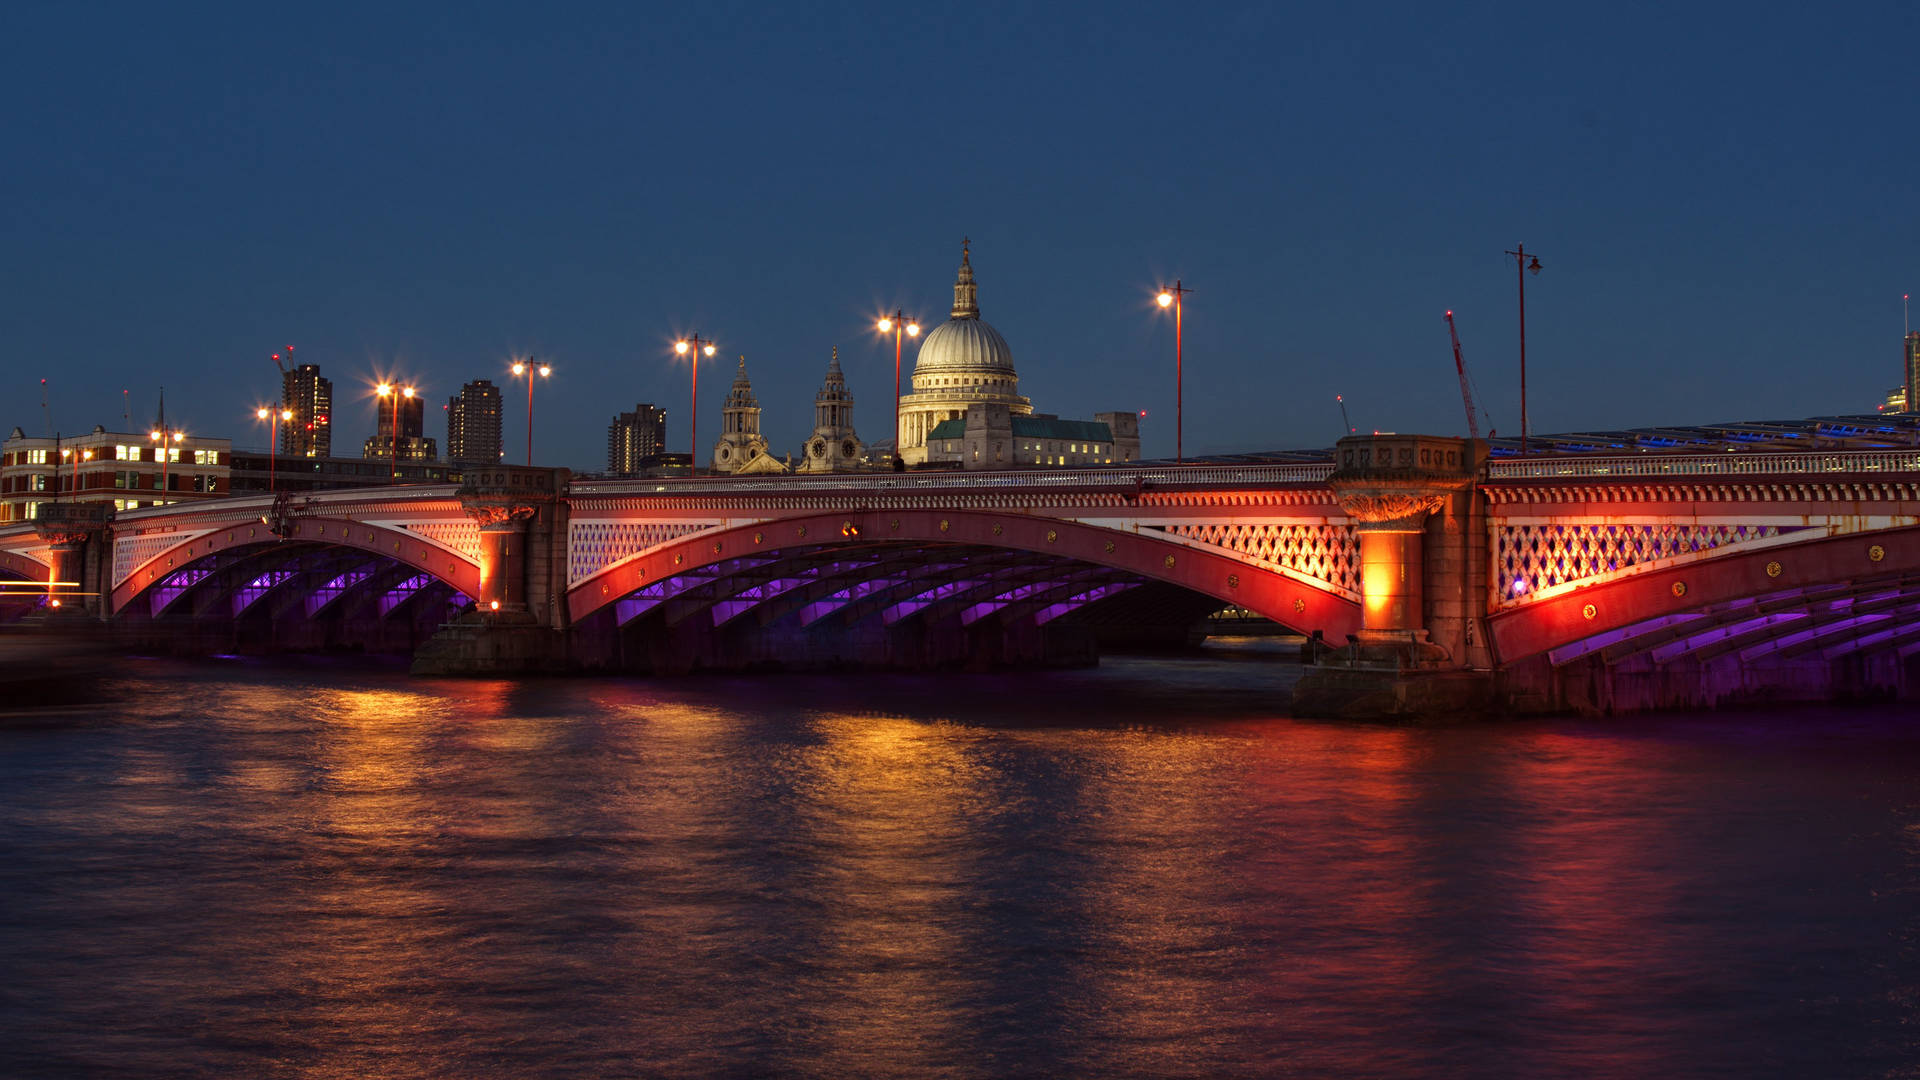 Illuminated Thames River at night London